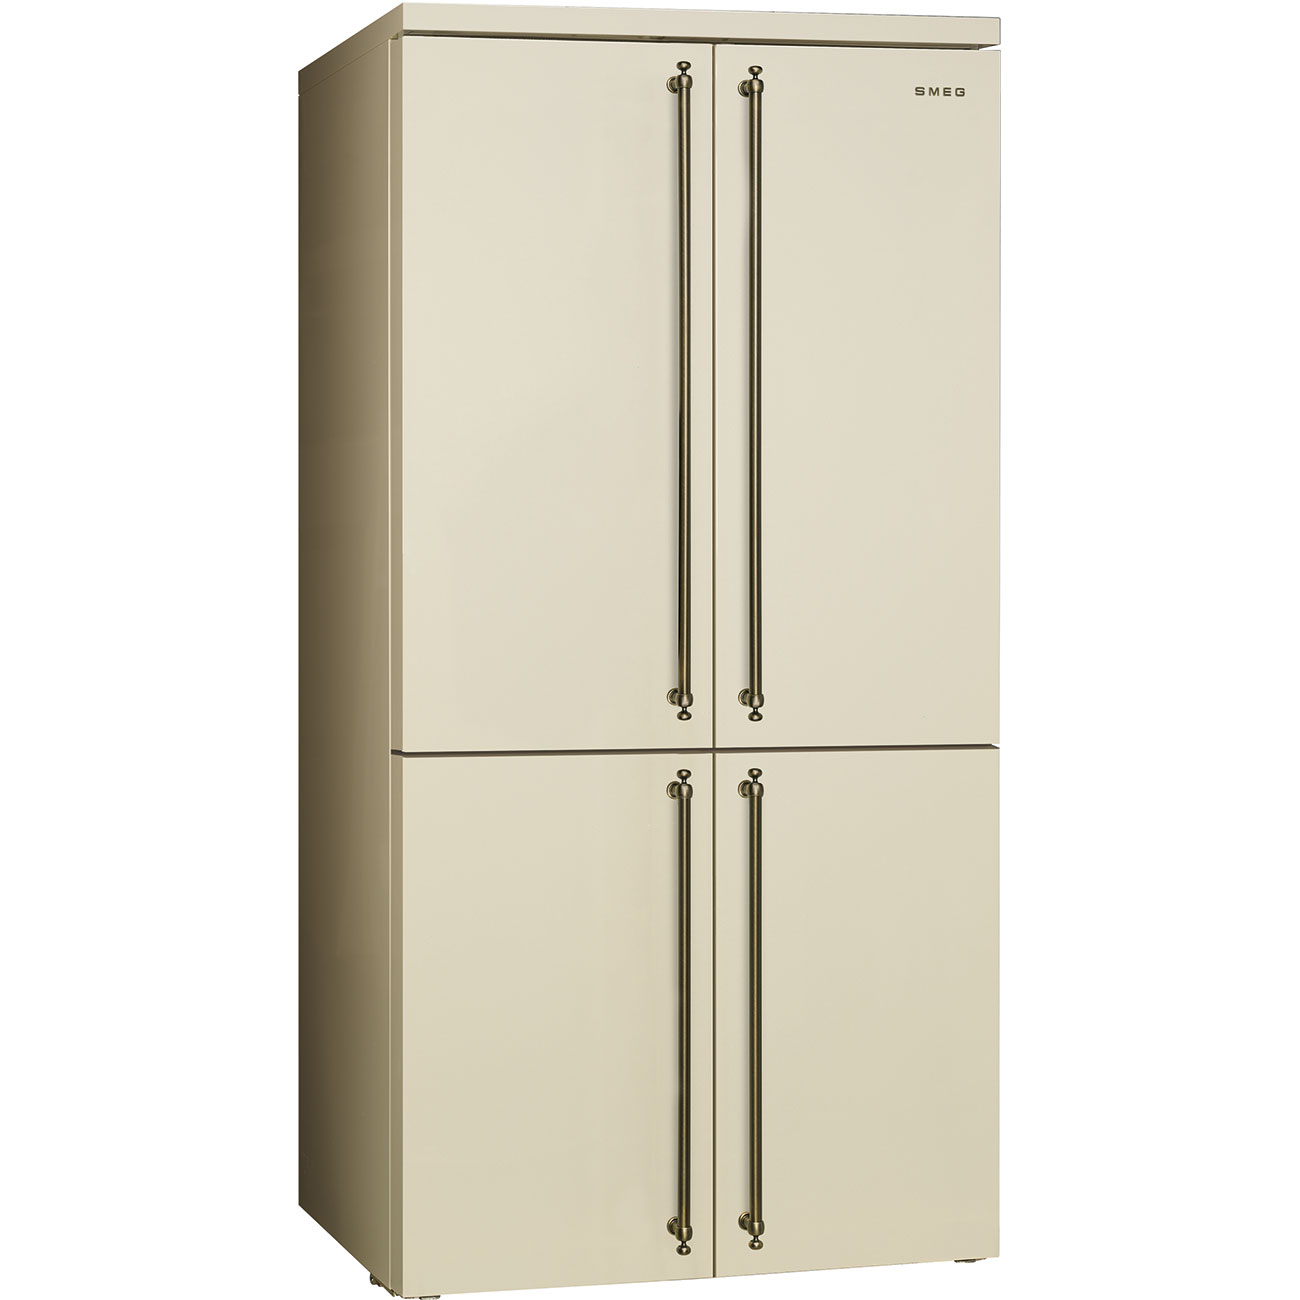 SMEG FQ60CPO5 Отдельностоящий 4-х дверный холодильник Side-by-side, No-frost, кремовый, фурнитура латунная